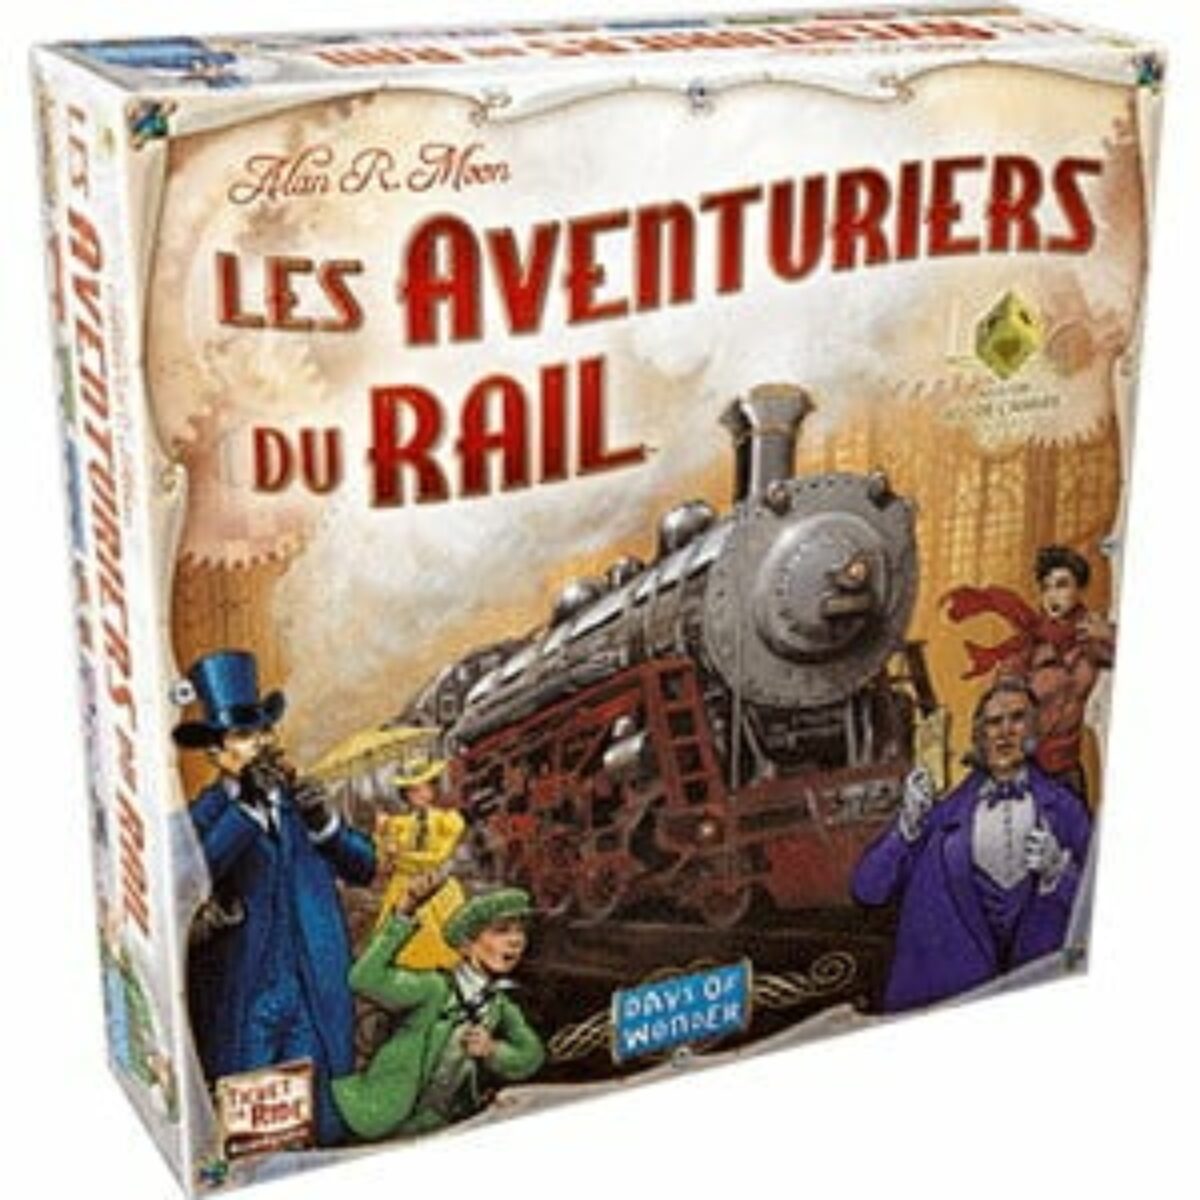 Un Train Sur Les Rails Avec Un Jeu De Couleurs Rouge Et Jaune.